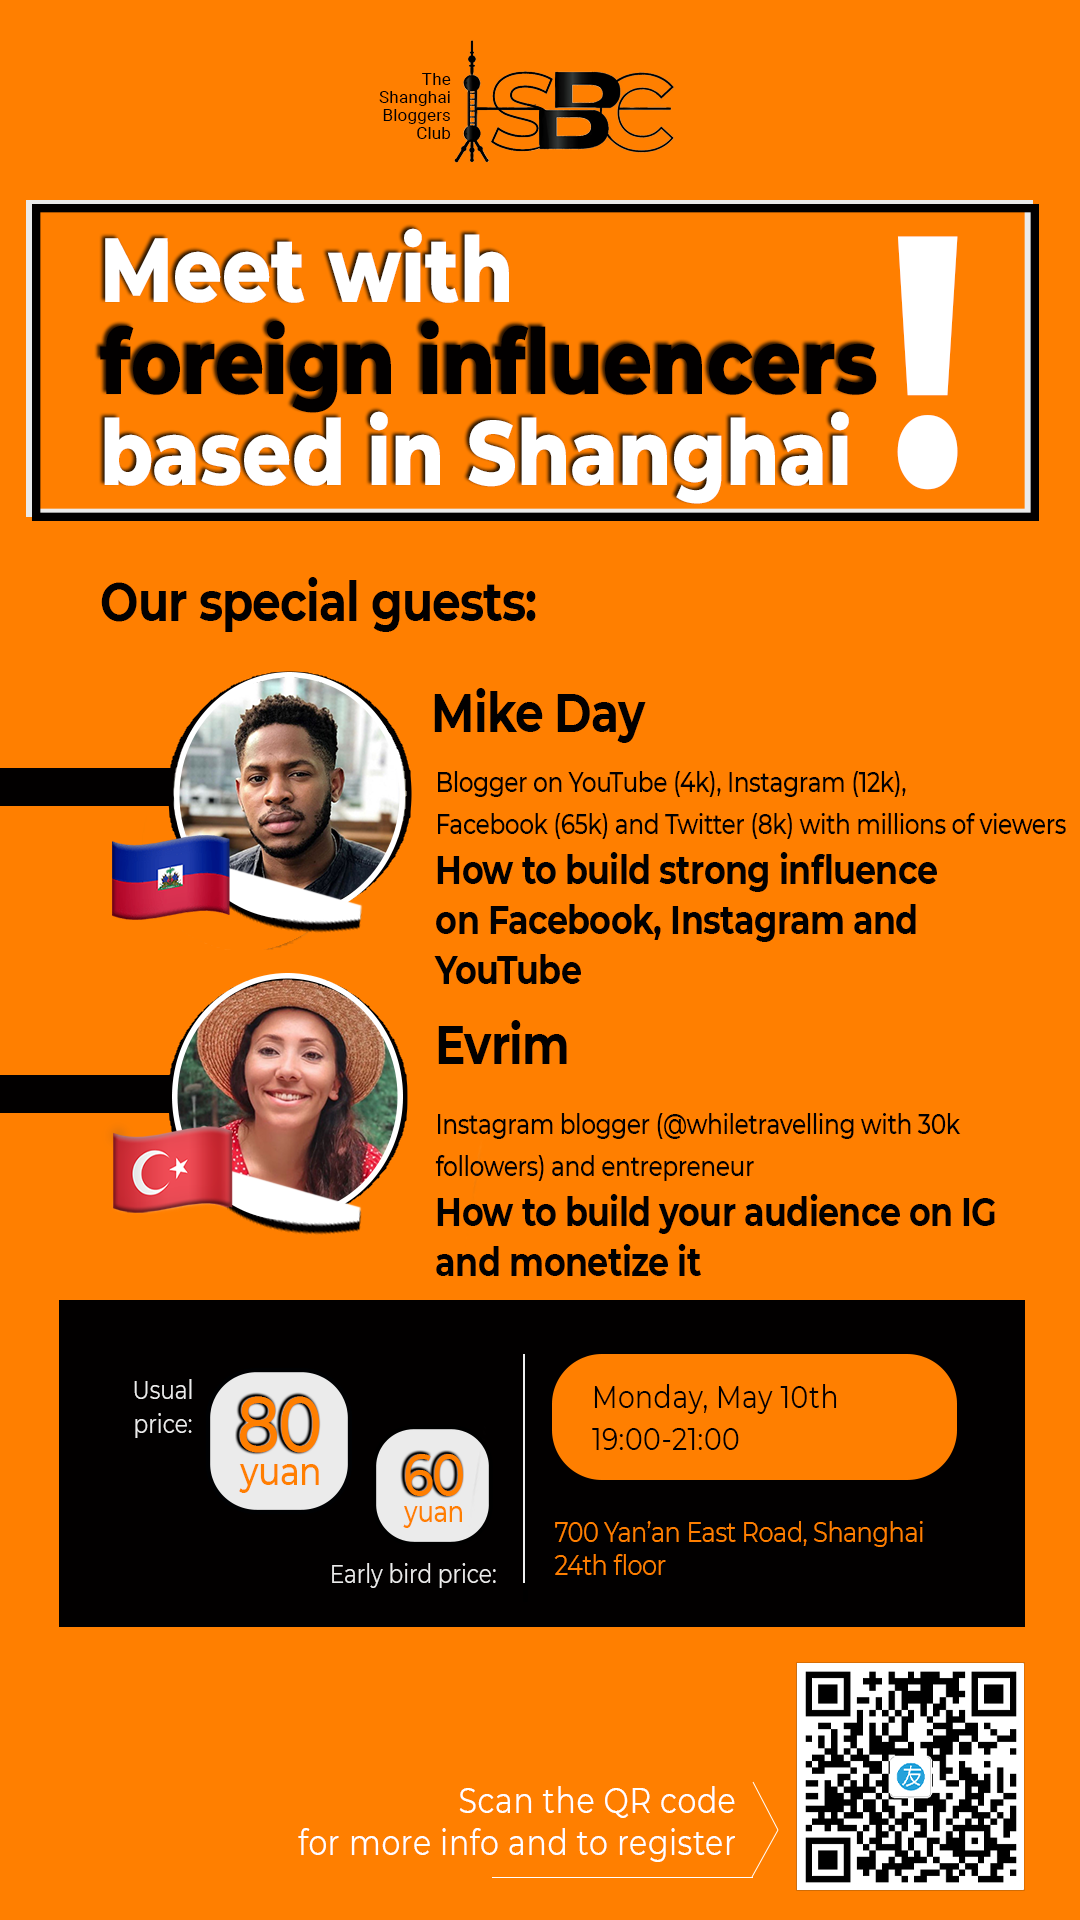 Meet influencers based in Shanghai